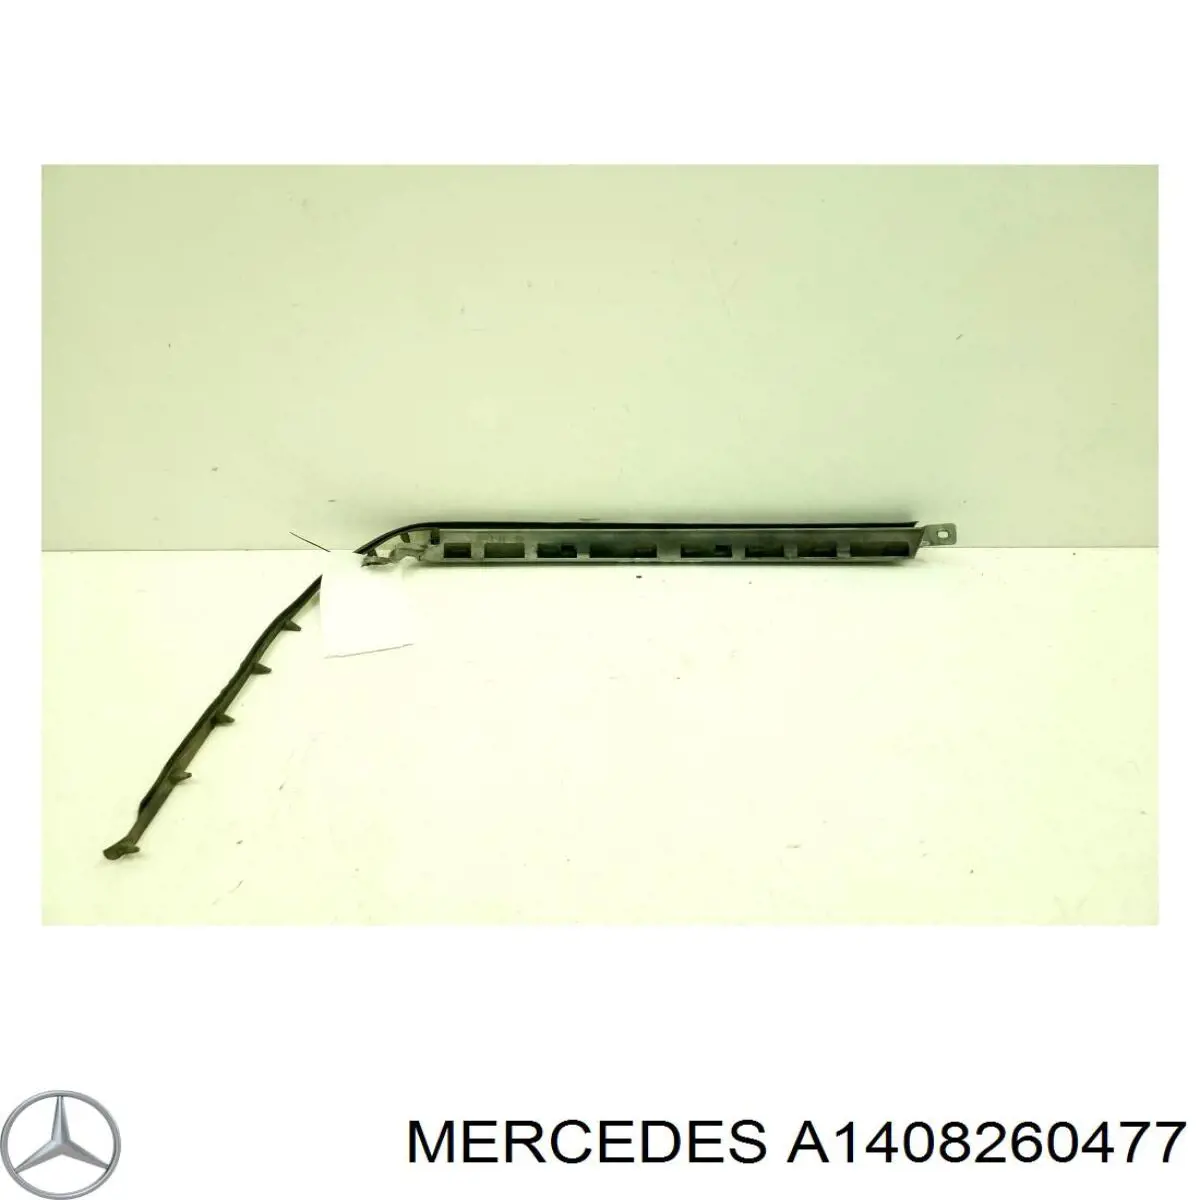 1408260477 Mercedes listón del faro derecho